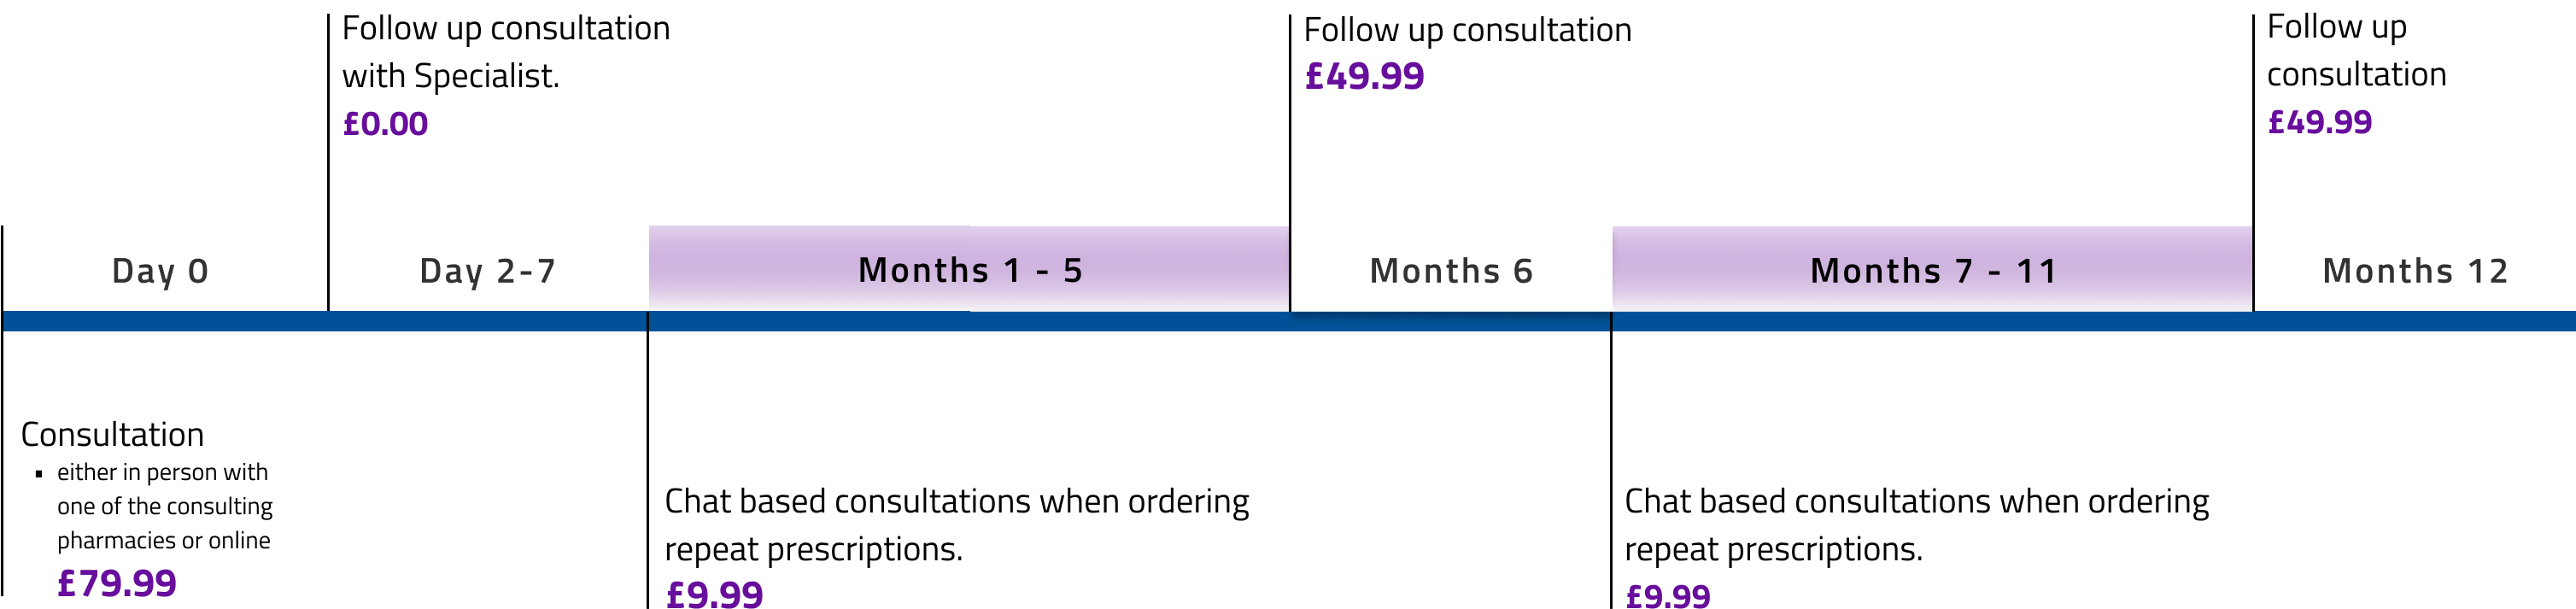 pricing-timeline-desktop